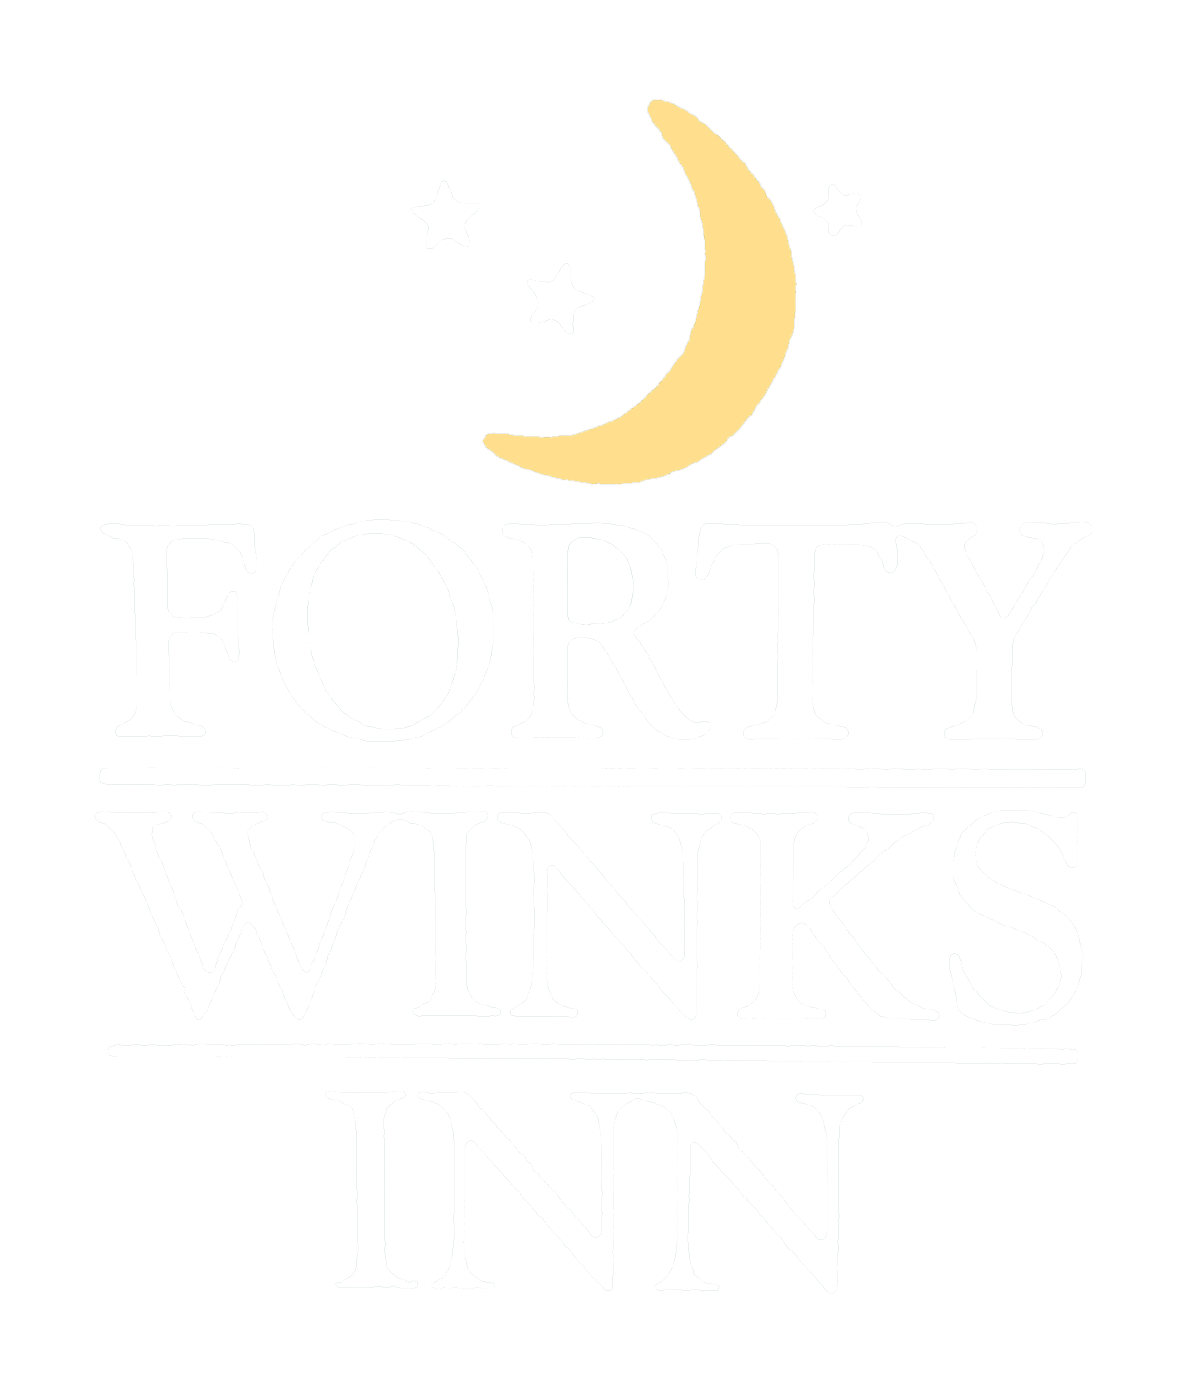 forty winks inn logo